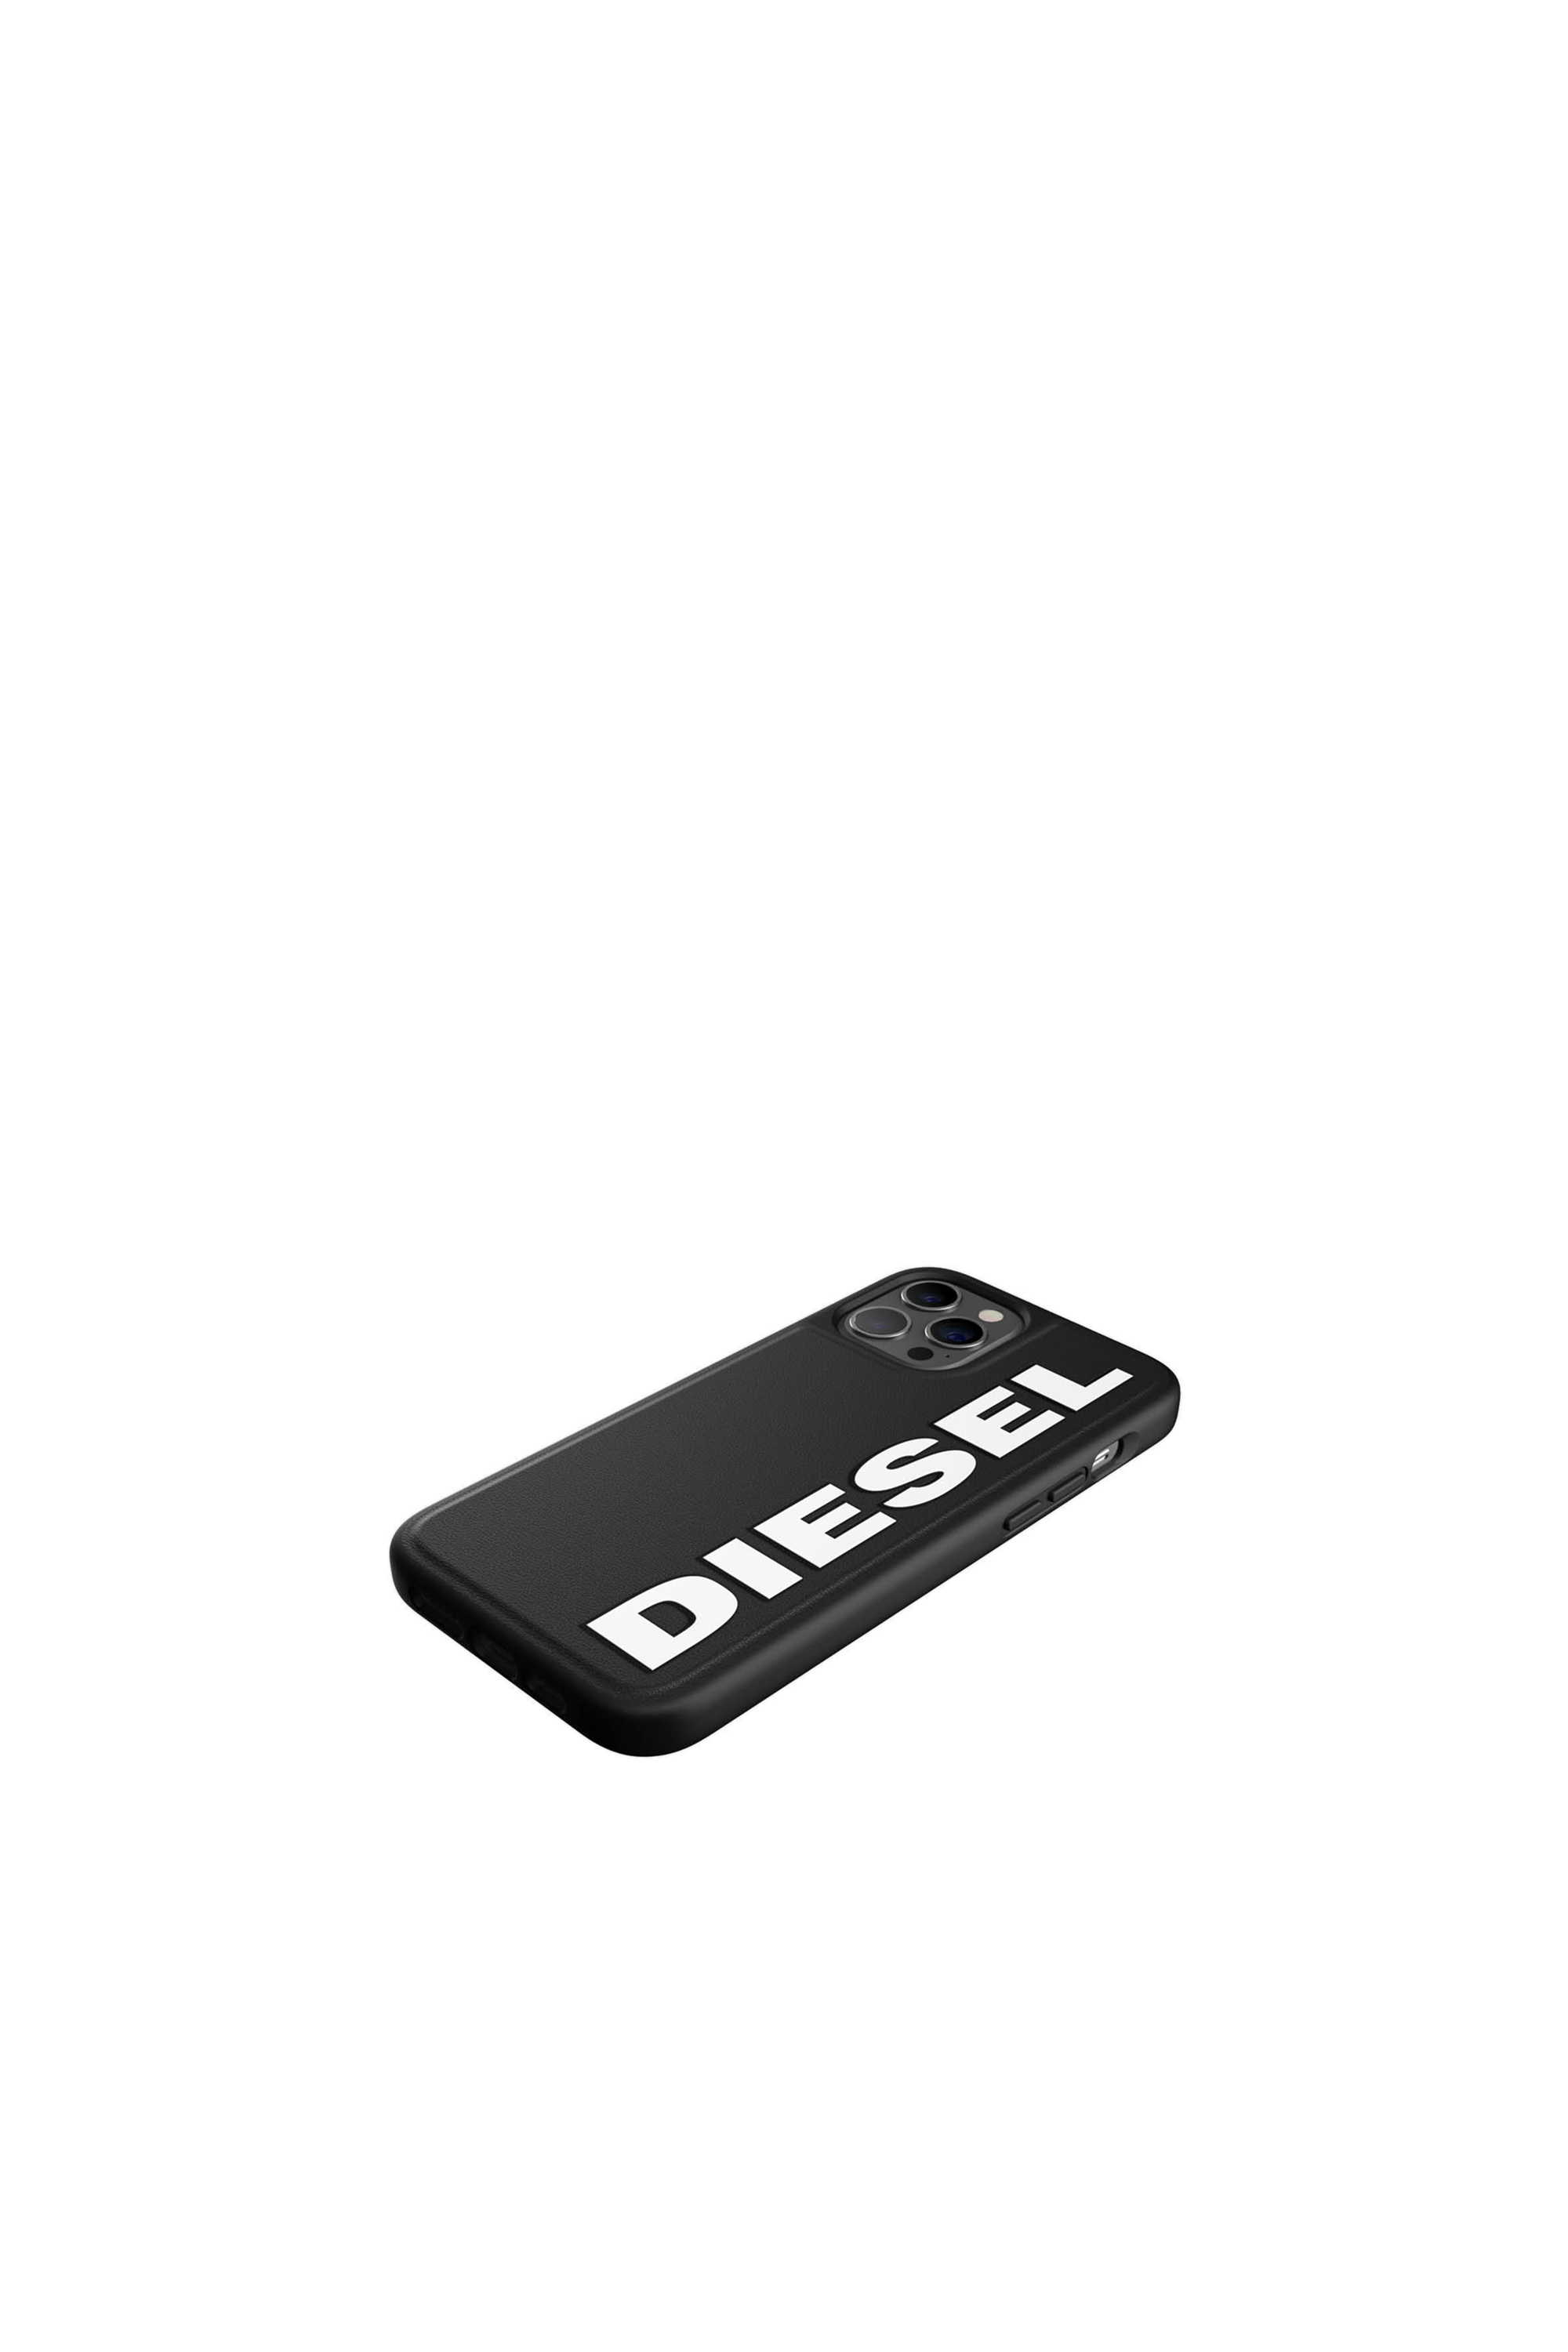 Diesel - 42493, Black - Image 4